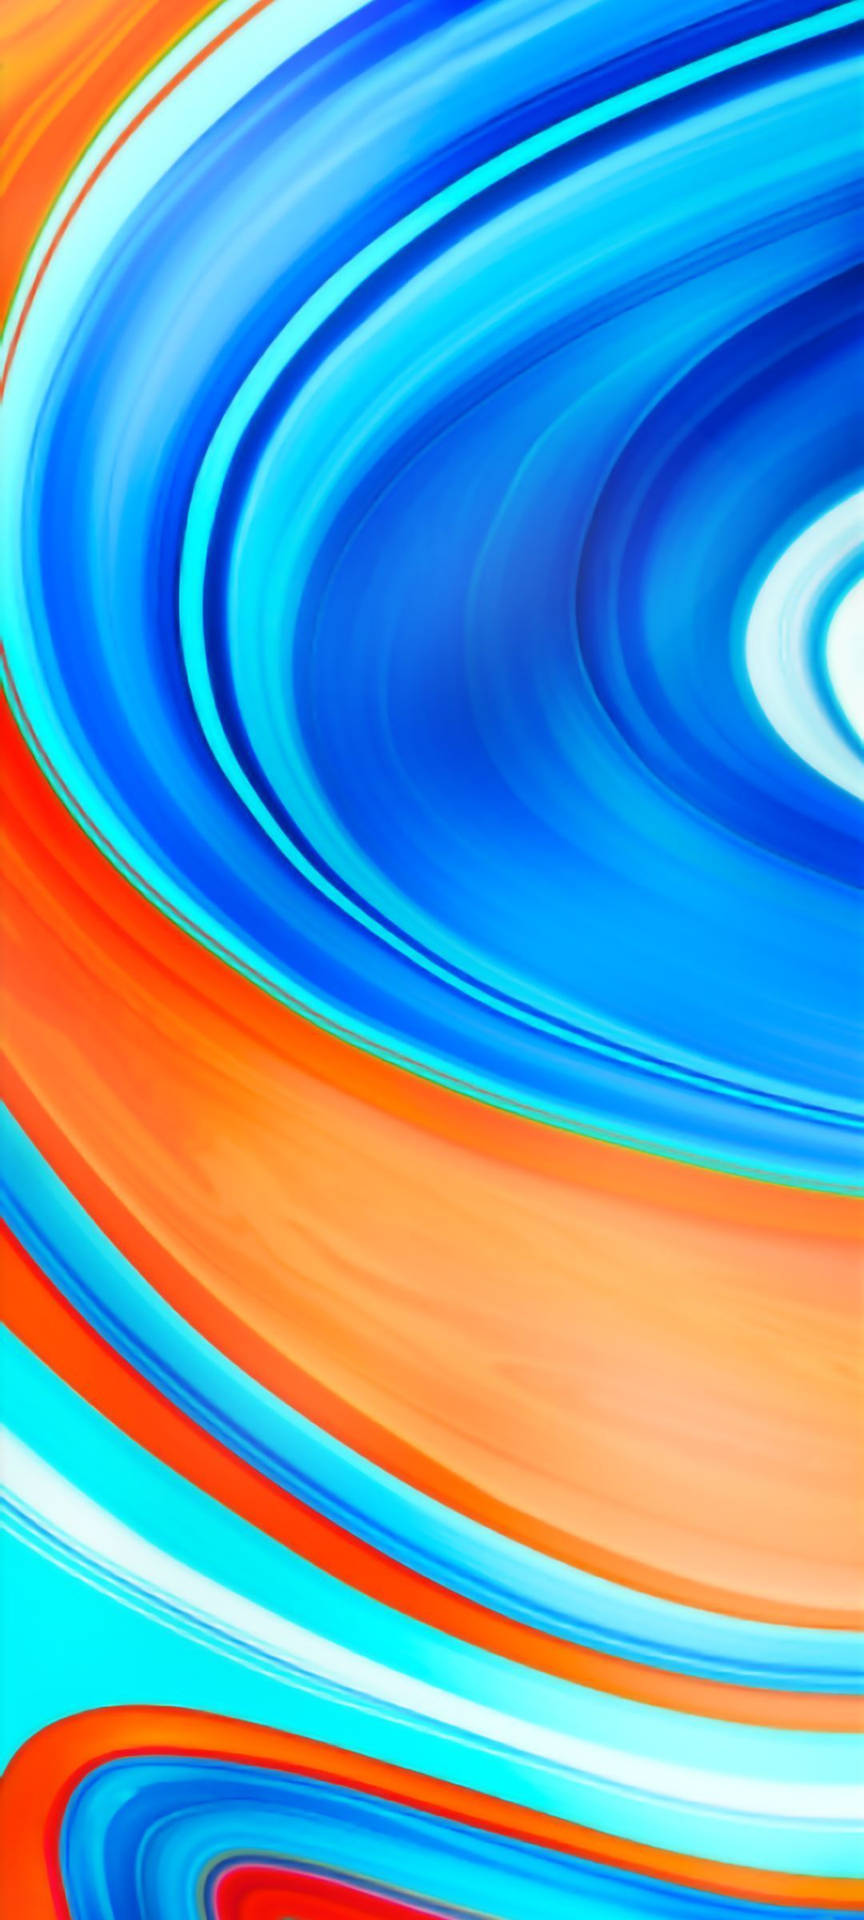 Caption: Stunning Display Of Redmi 9 In Blue & Orange Swirl Design Background